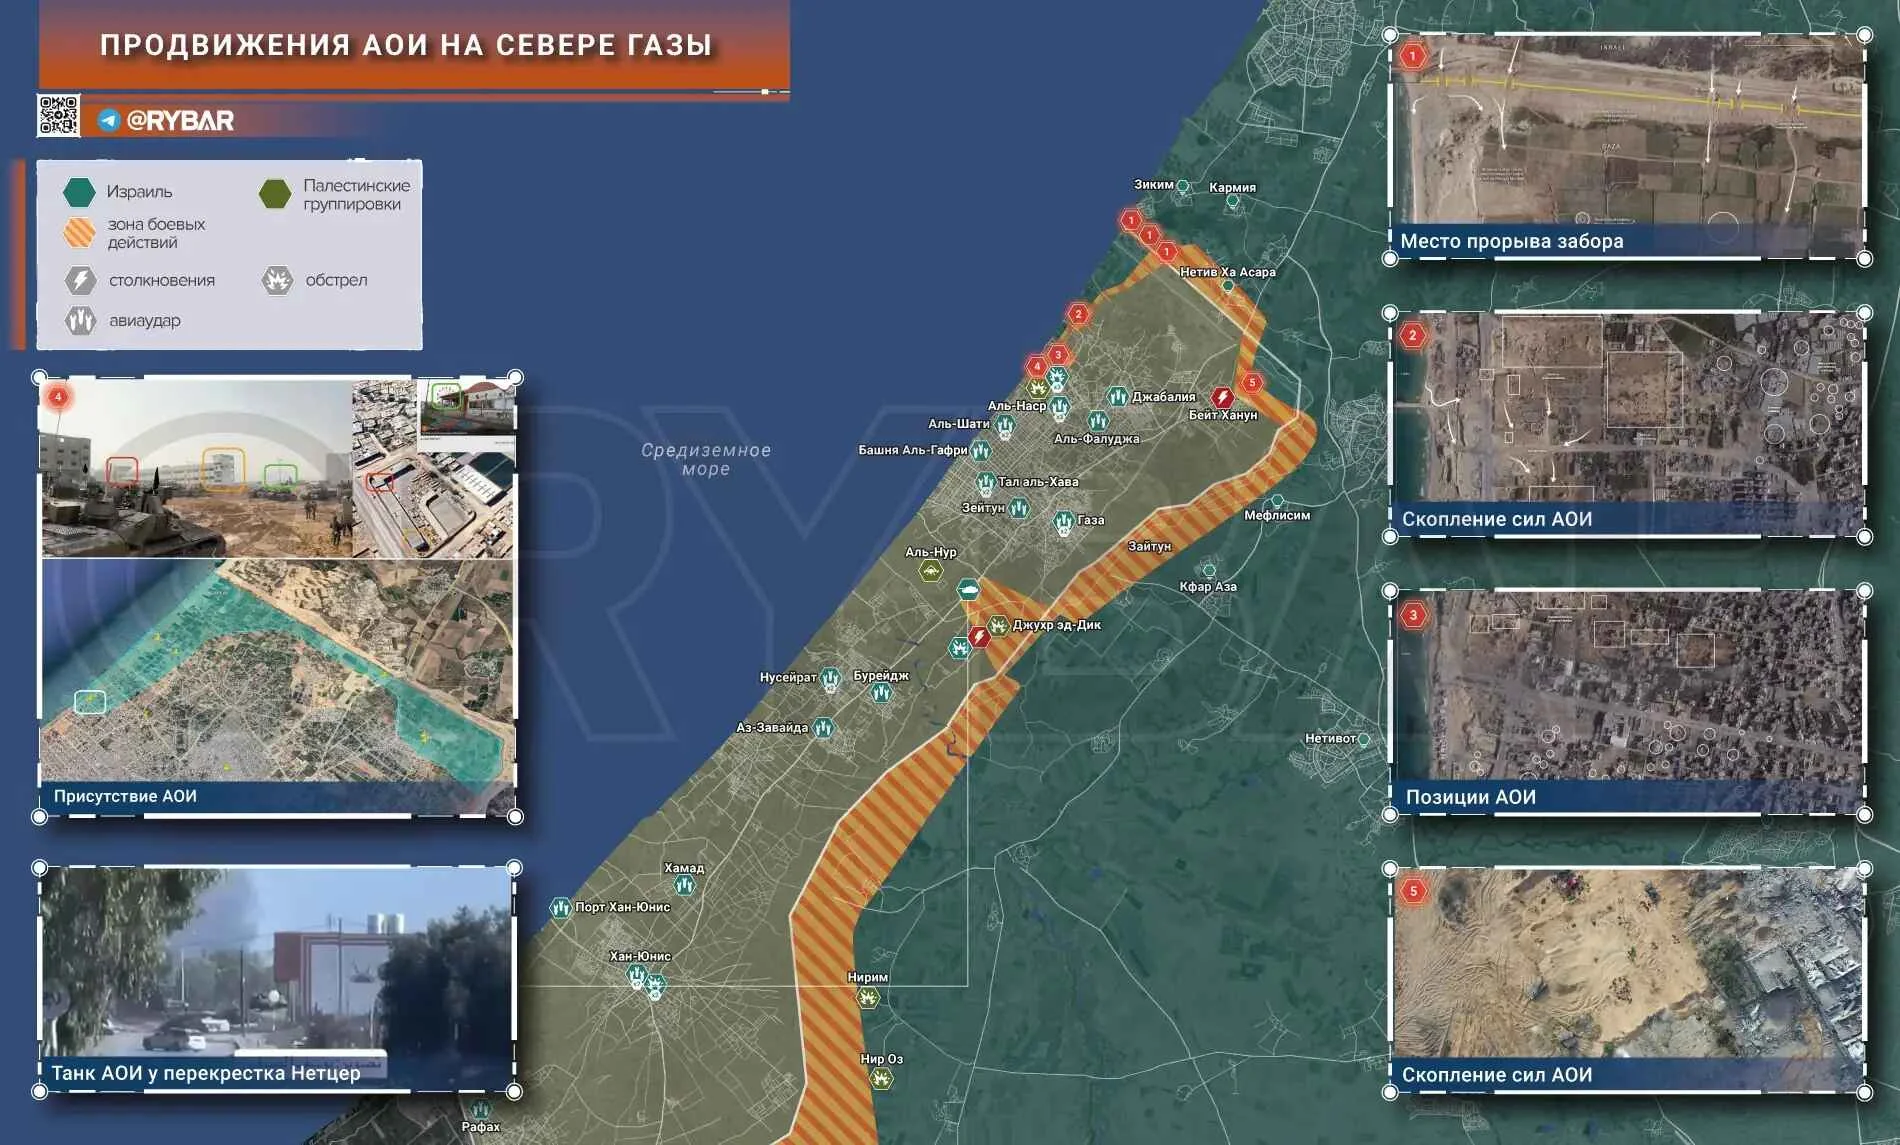 Израильская операция в секторе Газа 2 ноября, последние новости: АОИ зашли в северную часть анклава с двух направлений